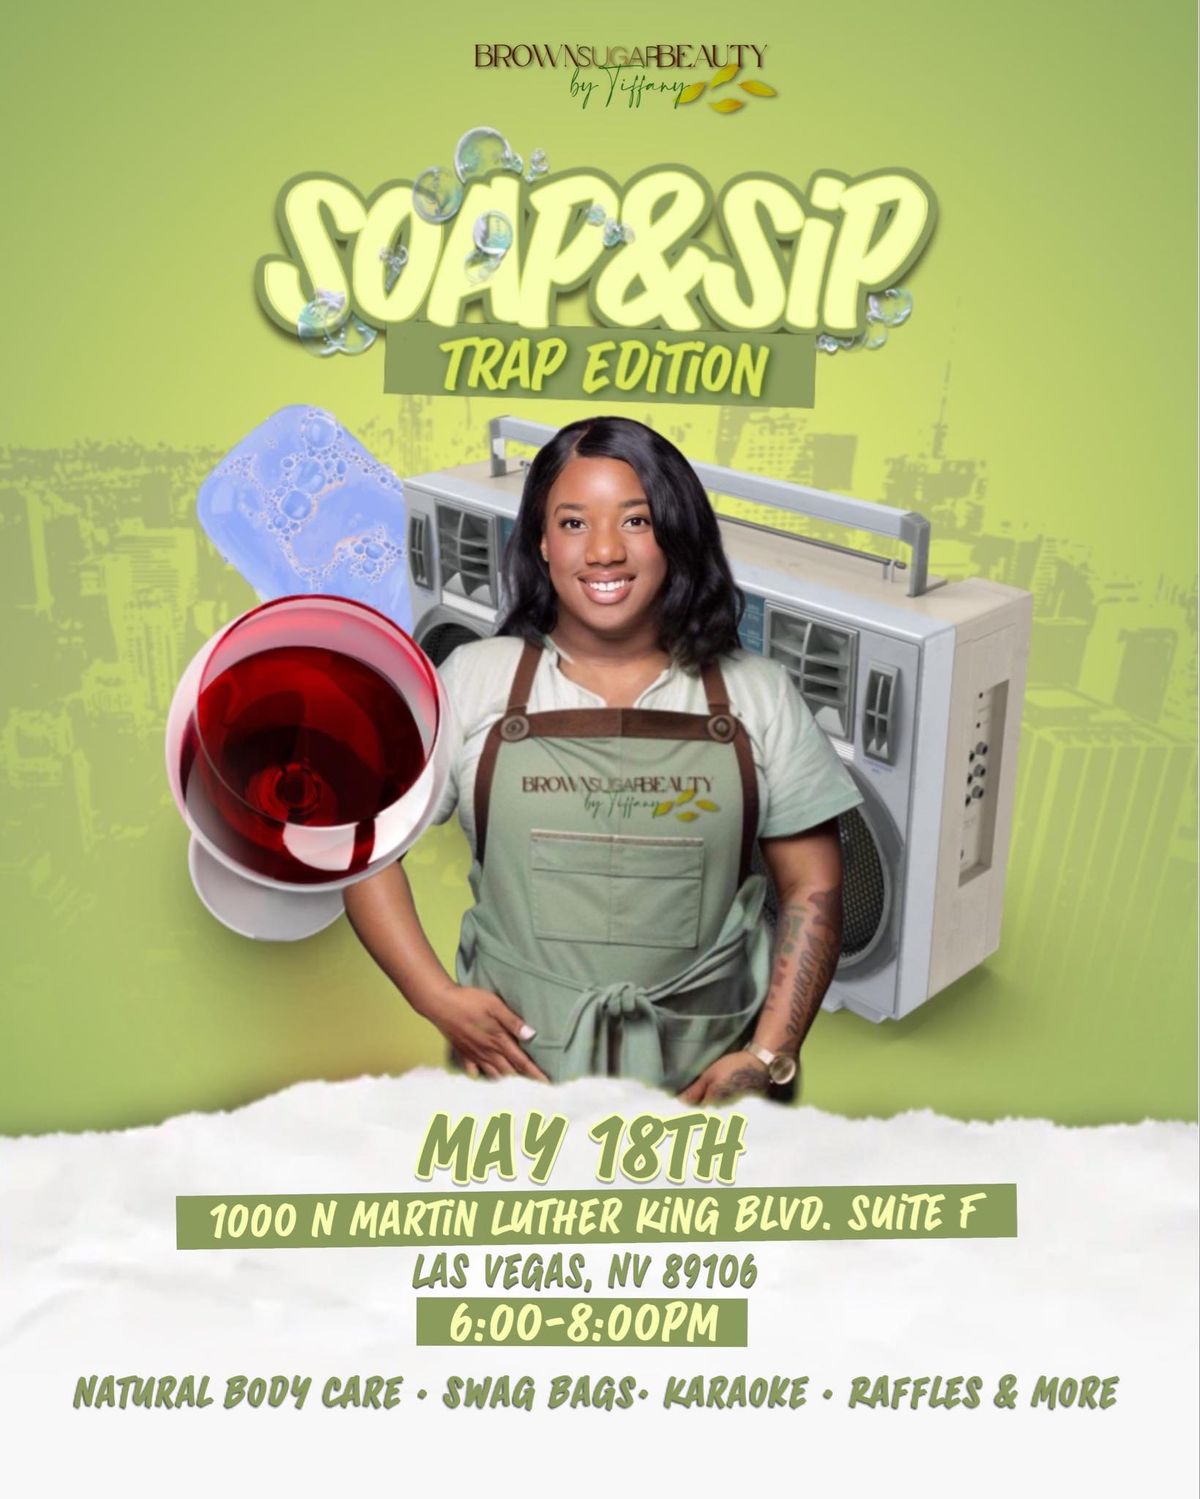 Soap & Sip Trap Edition